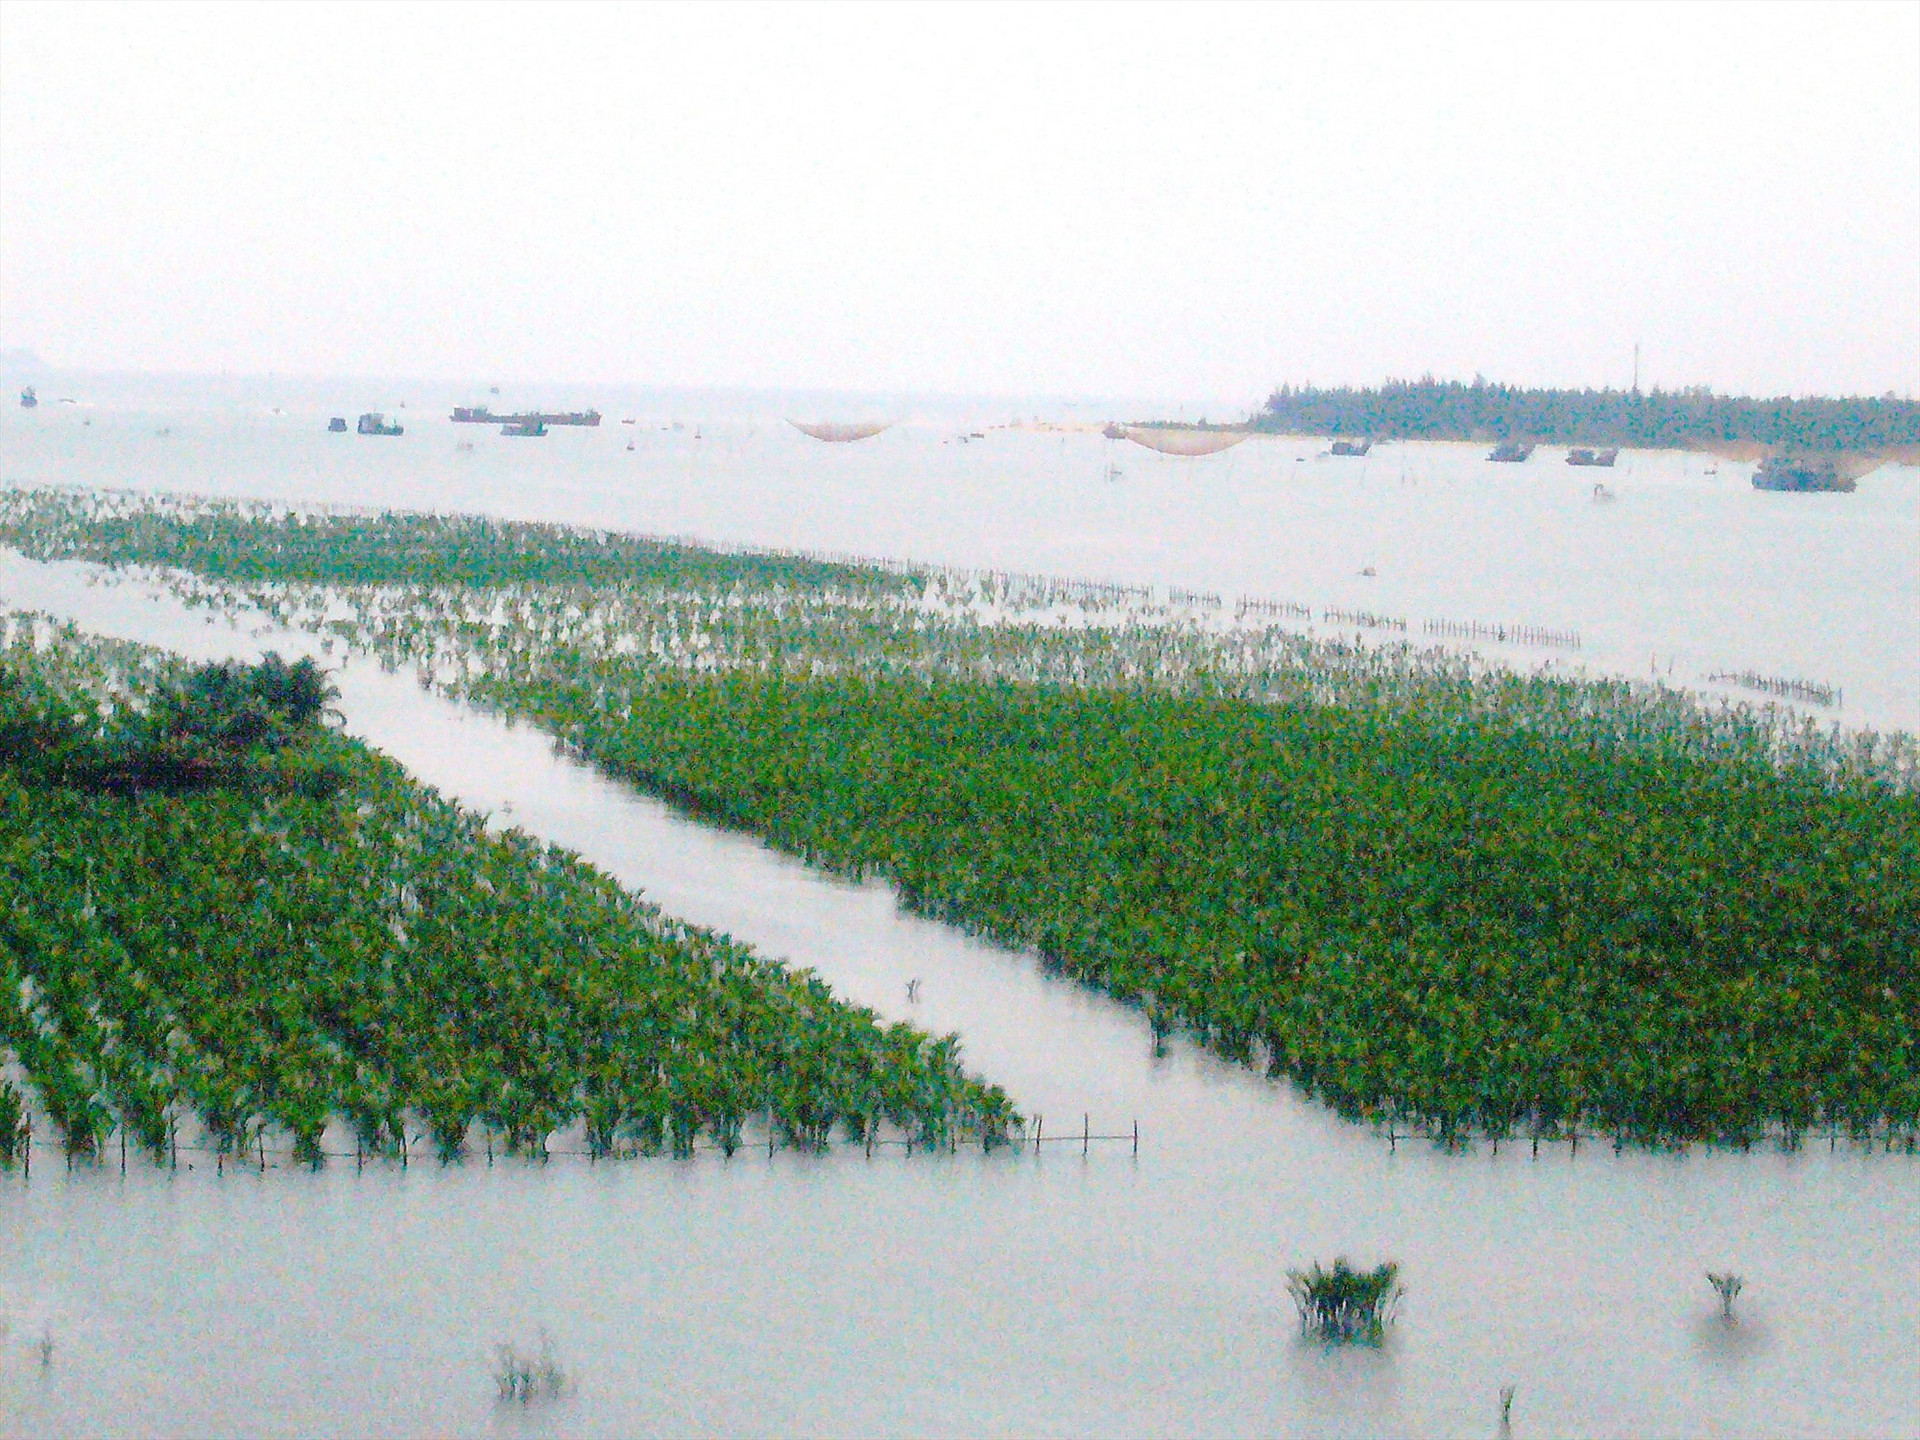 Diện tích rừng dừa được trồng mới ở vùng cửa sông ven biển xã Cẩm Thanh. Ảnh: Đ.H